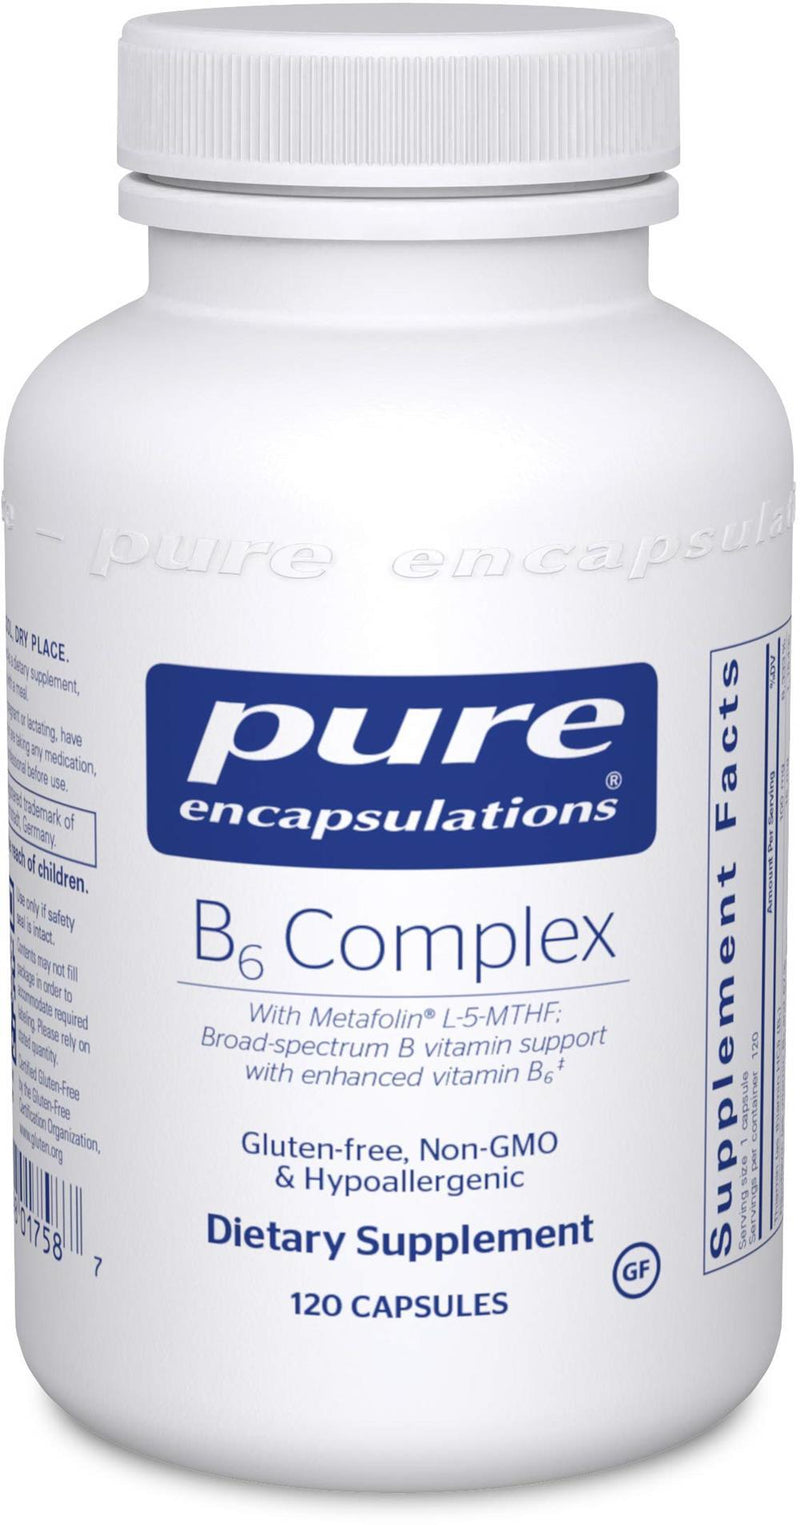 Pure Encapsulations B6 Complex -- 60 Capsules 120 capsules